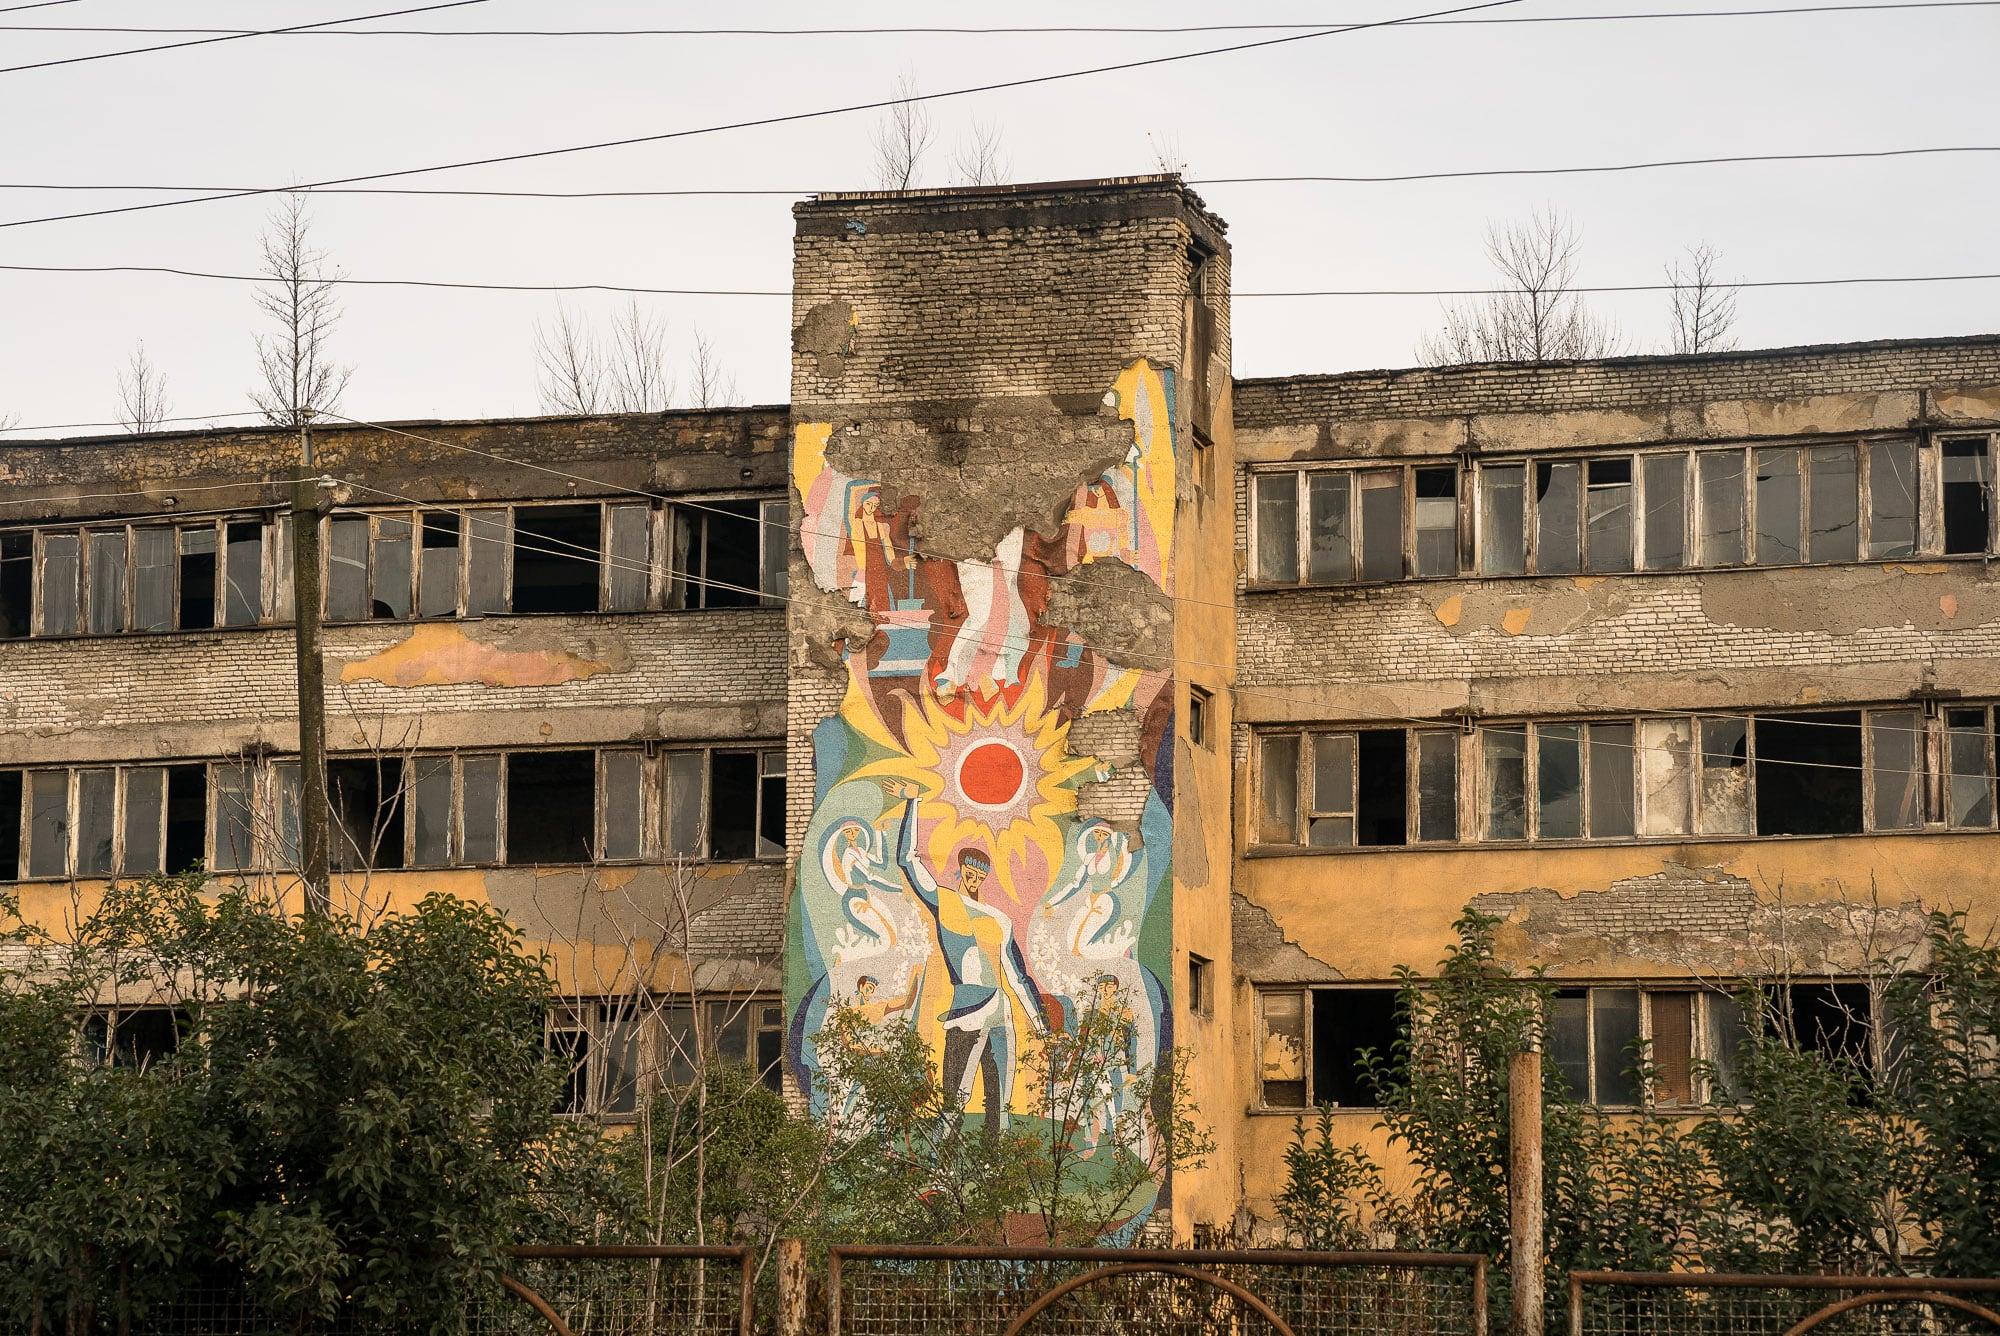 Soviet mural